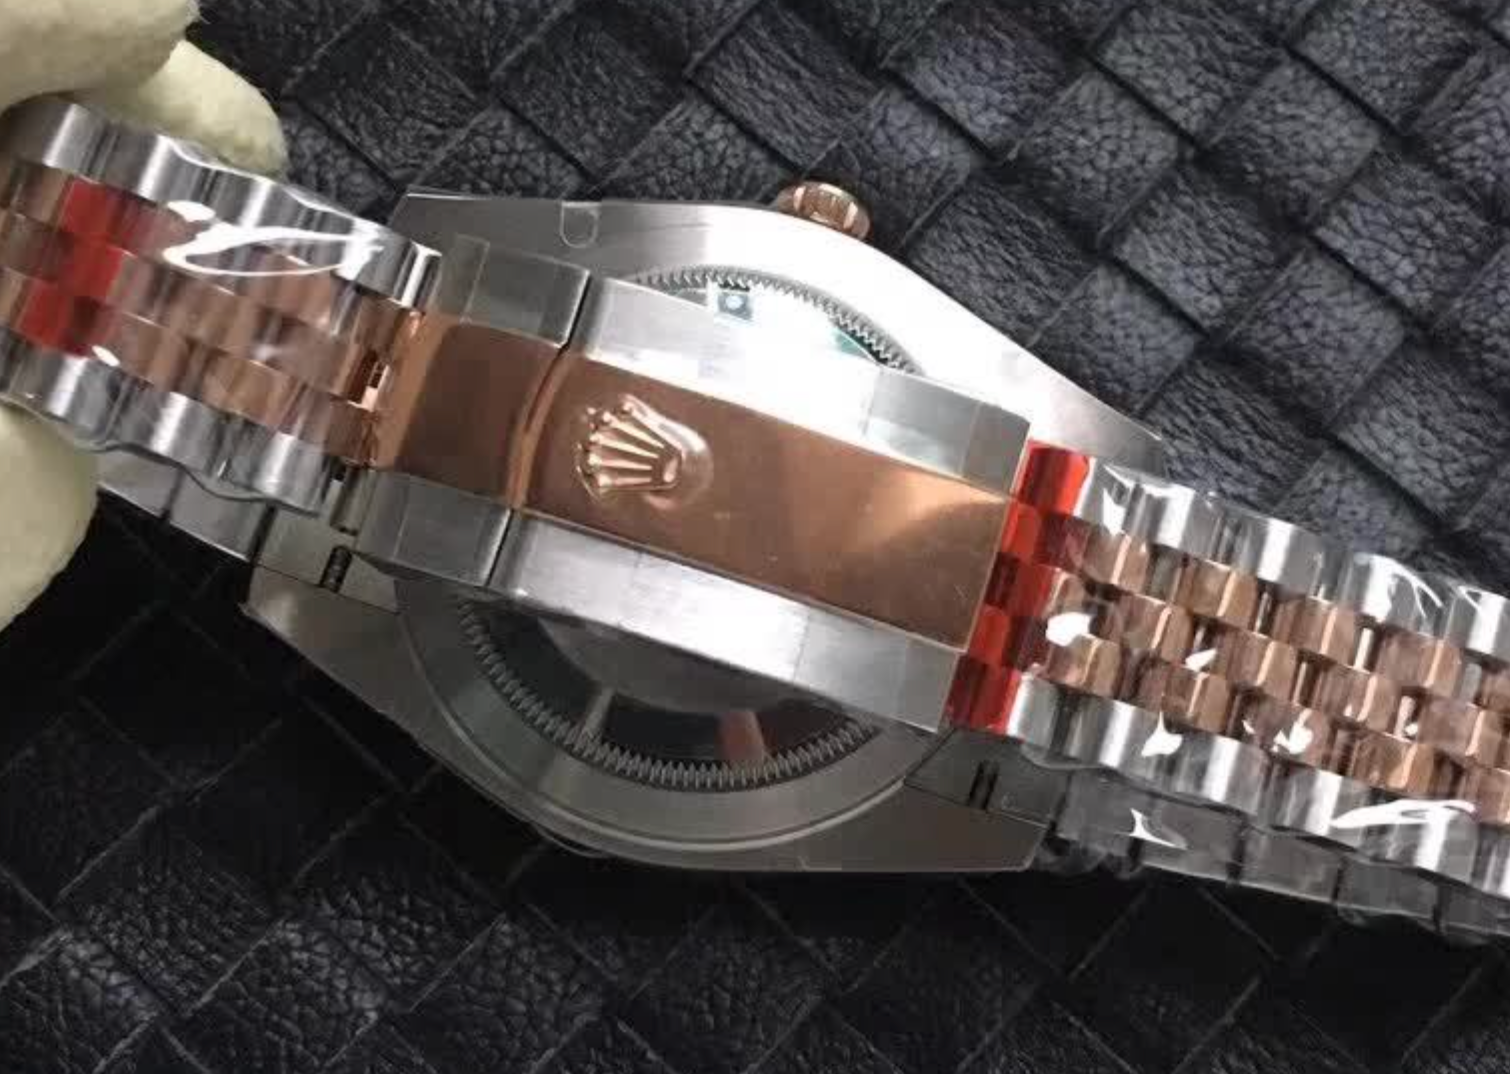 Replica Rolex Wimbledon Rose Gold - IP Empire Replica Watches